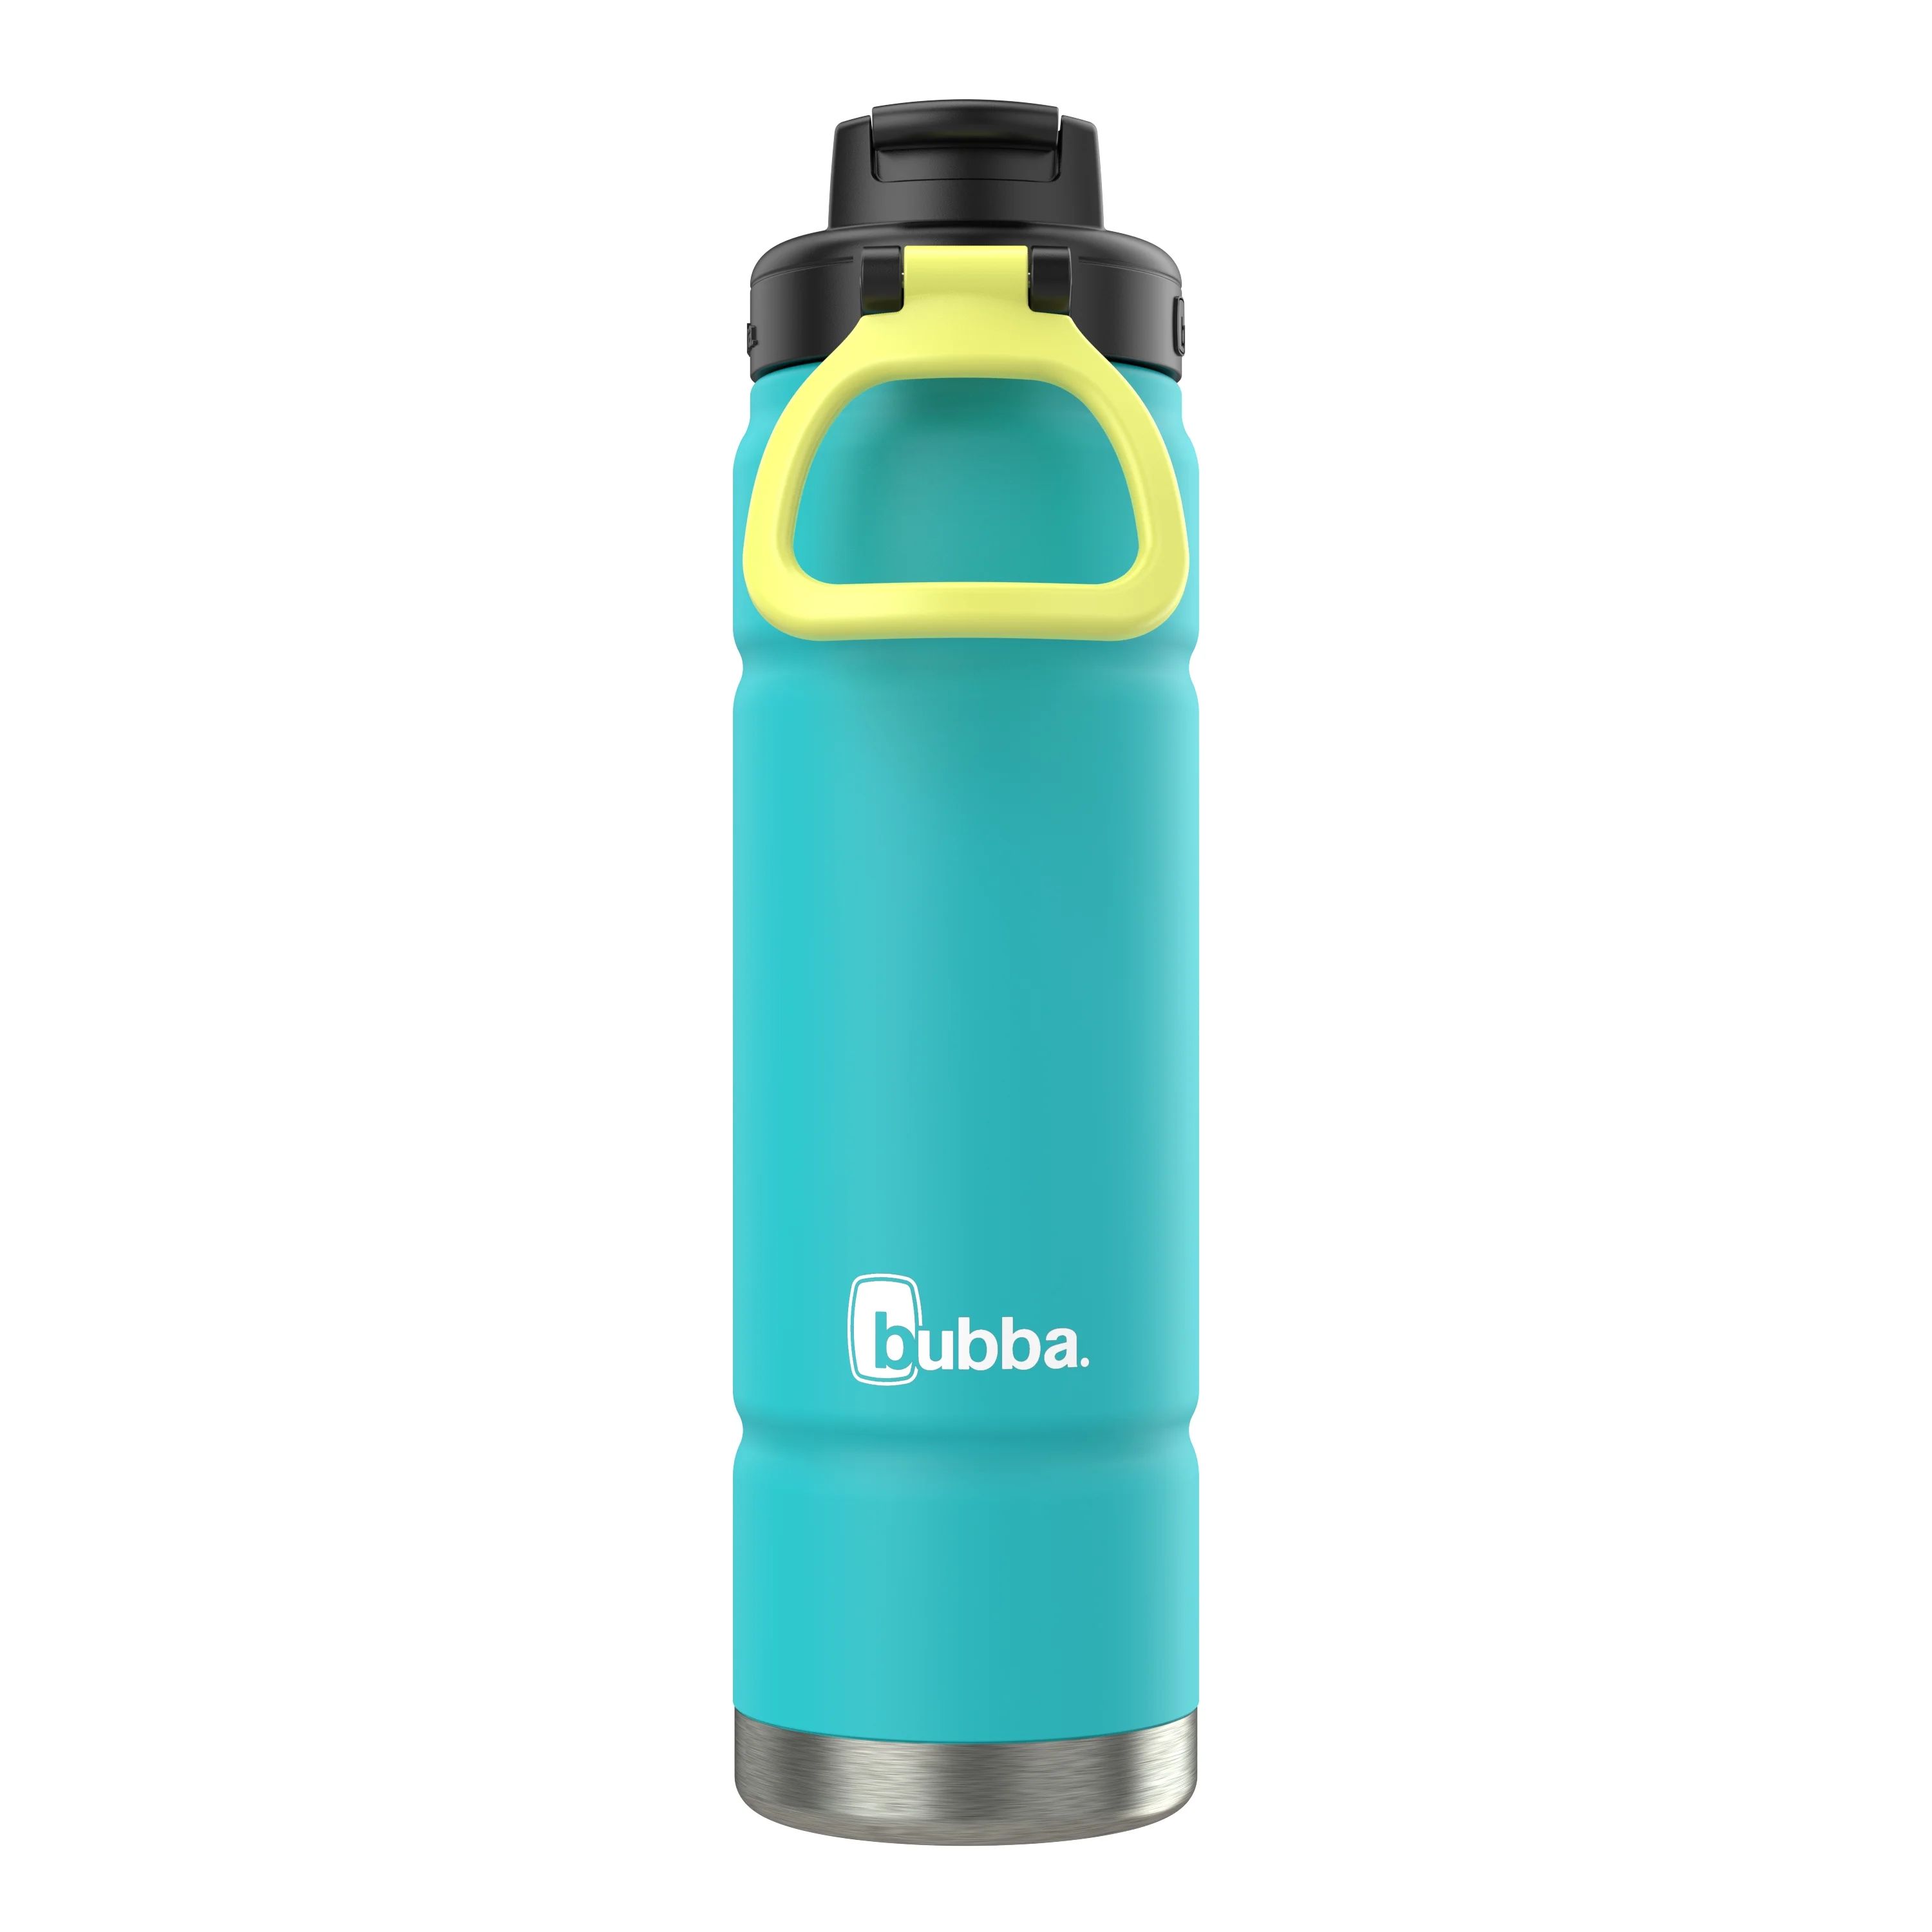 Bubba Trailblazer Stainless Steel Water Bottle, Straw Lid Rubberized Teal, 24 fl oz. | Walmart (US)